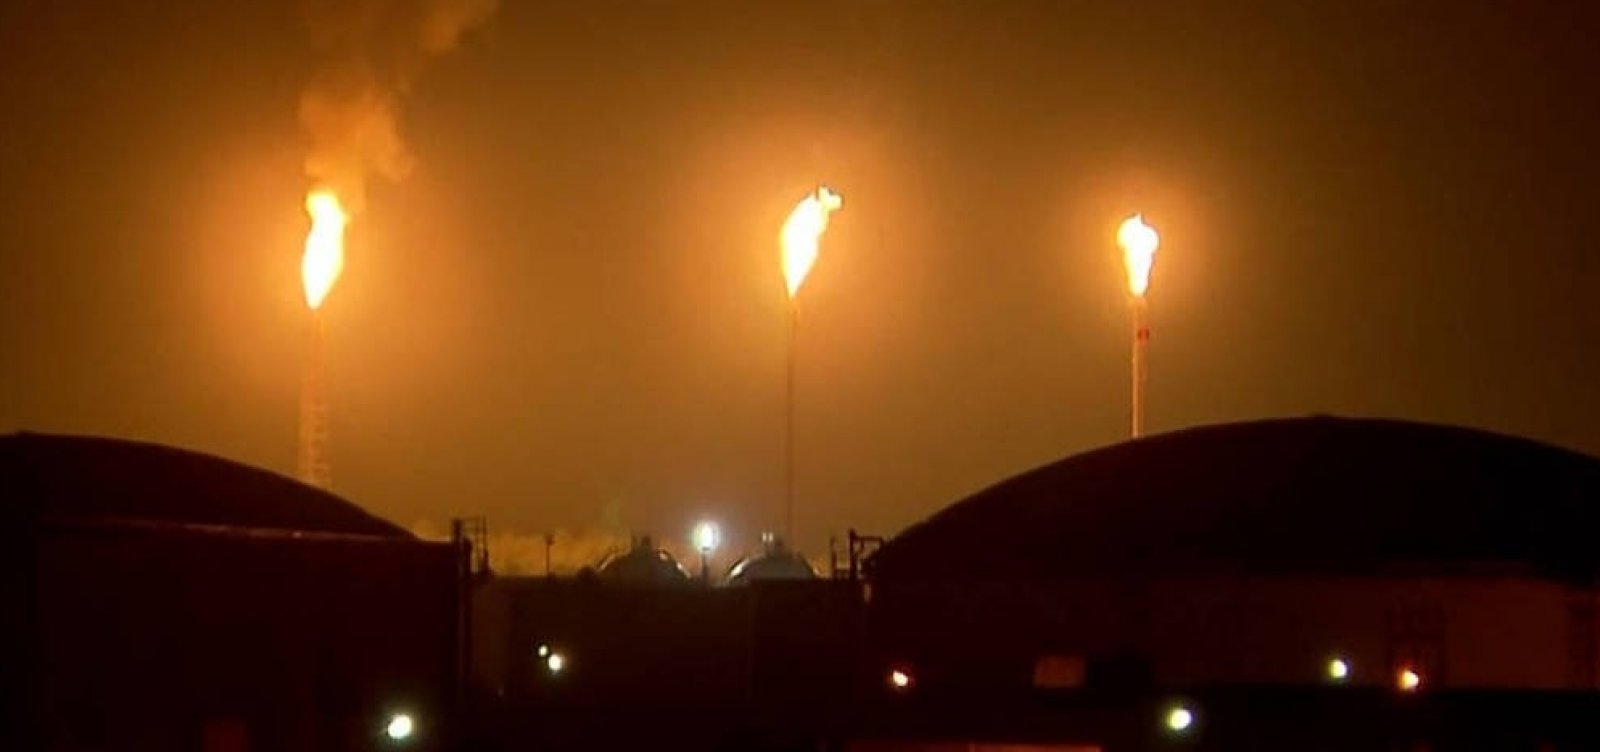 Incêndio em refinaria não afeta abastecimento em curto prazo, diz executivo da Petrobras